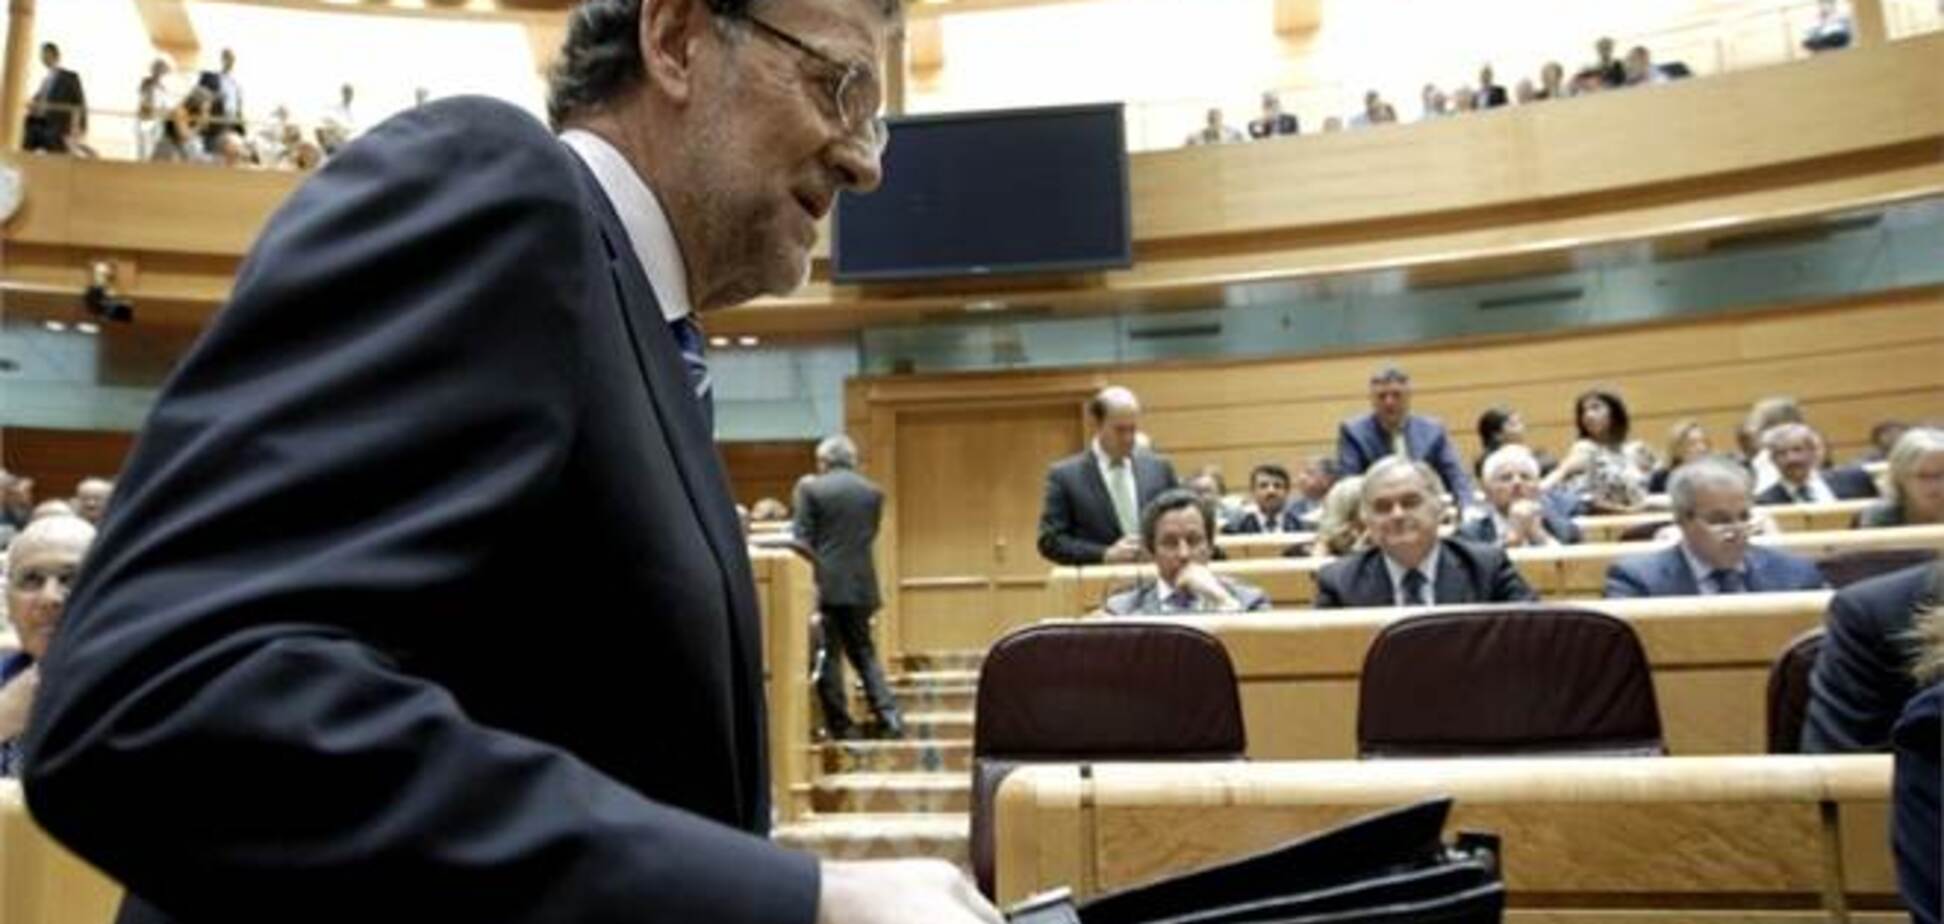 Іспанський прем'єр наполягає, що не отримував 'чорних виплат'